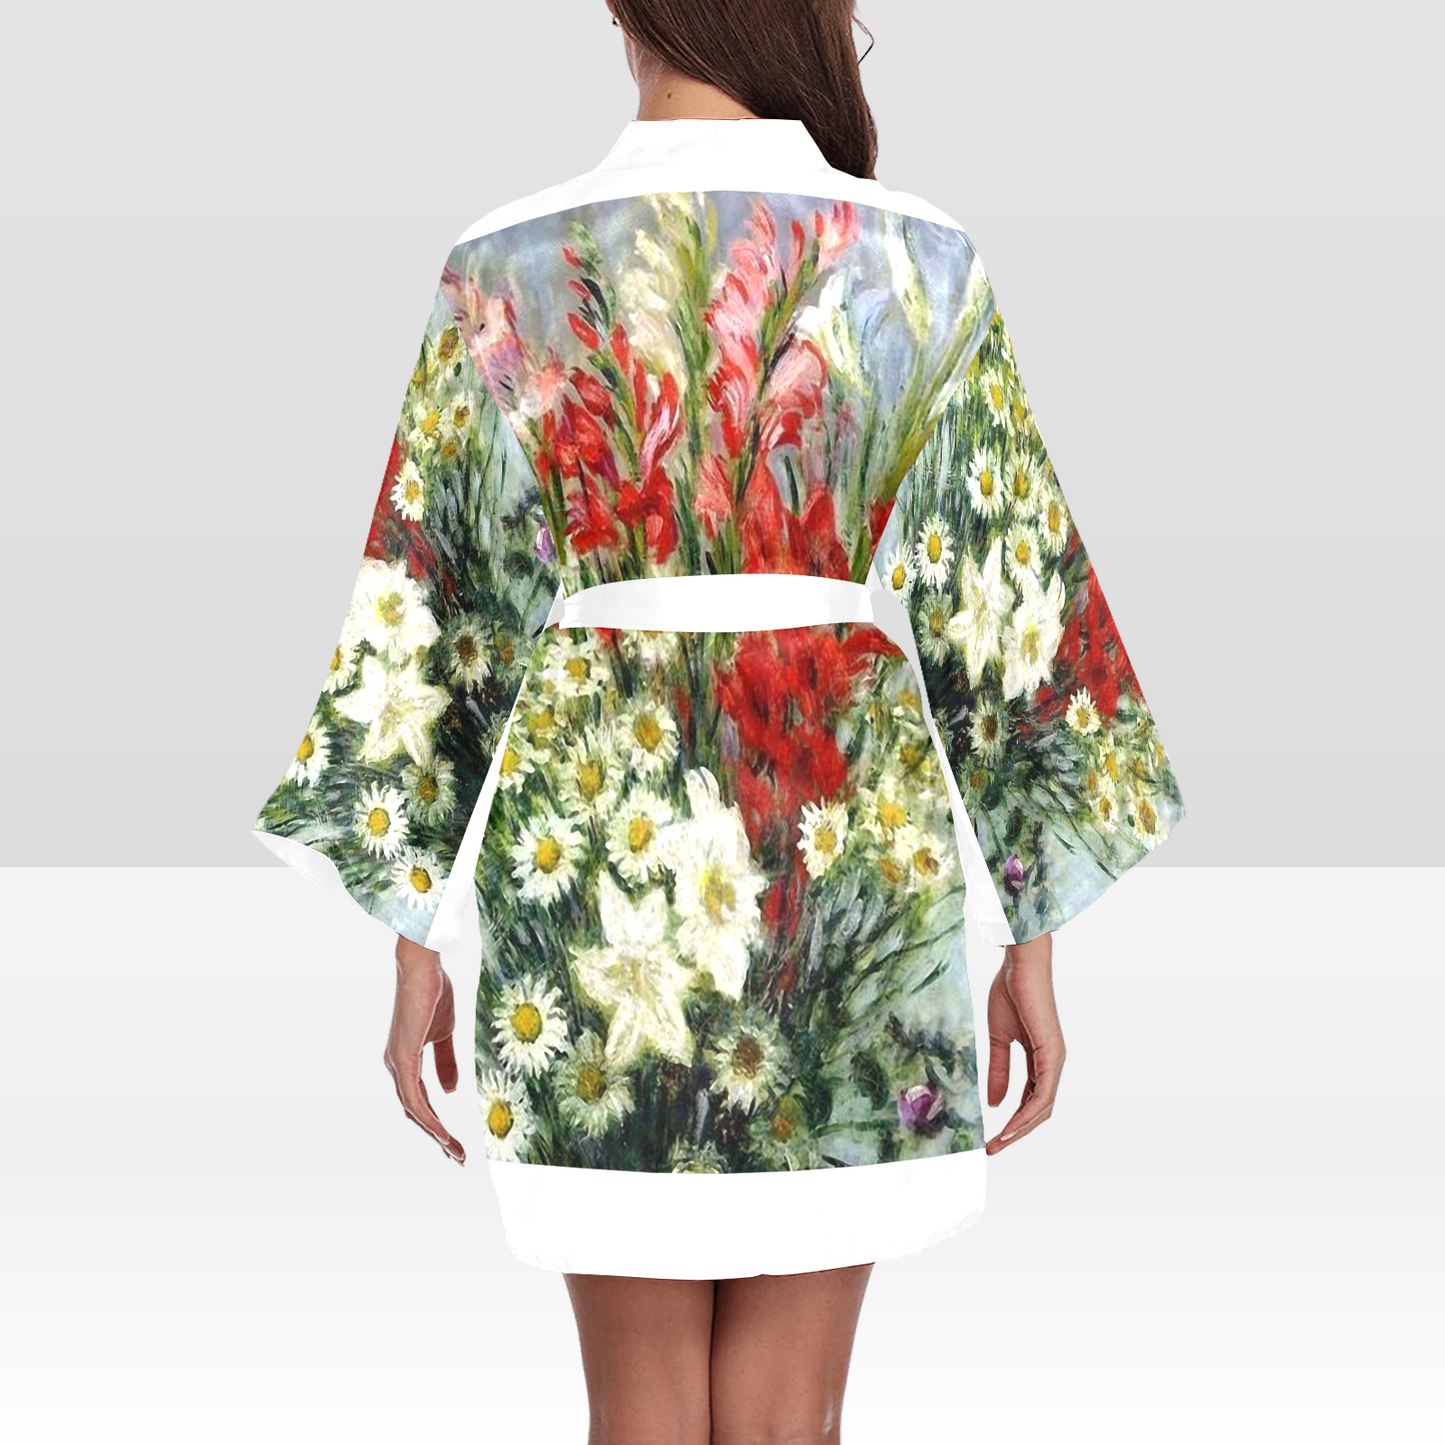 Vintage Floral Kimono Robe, Black or White Trim, Sizes XS to 2XL, Design 43